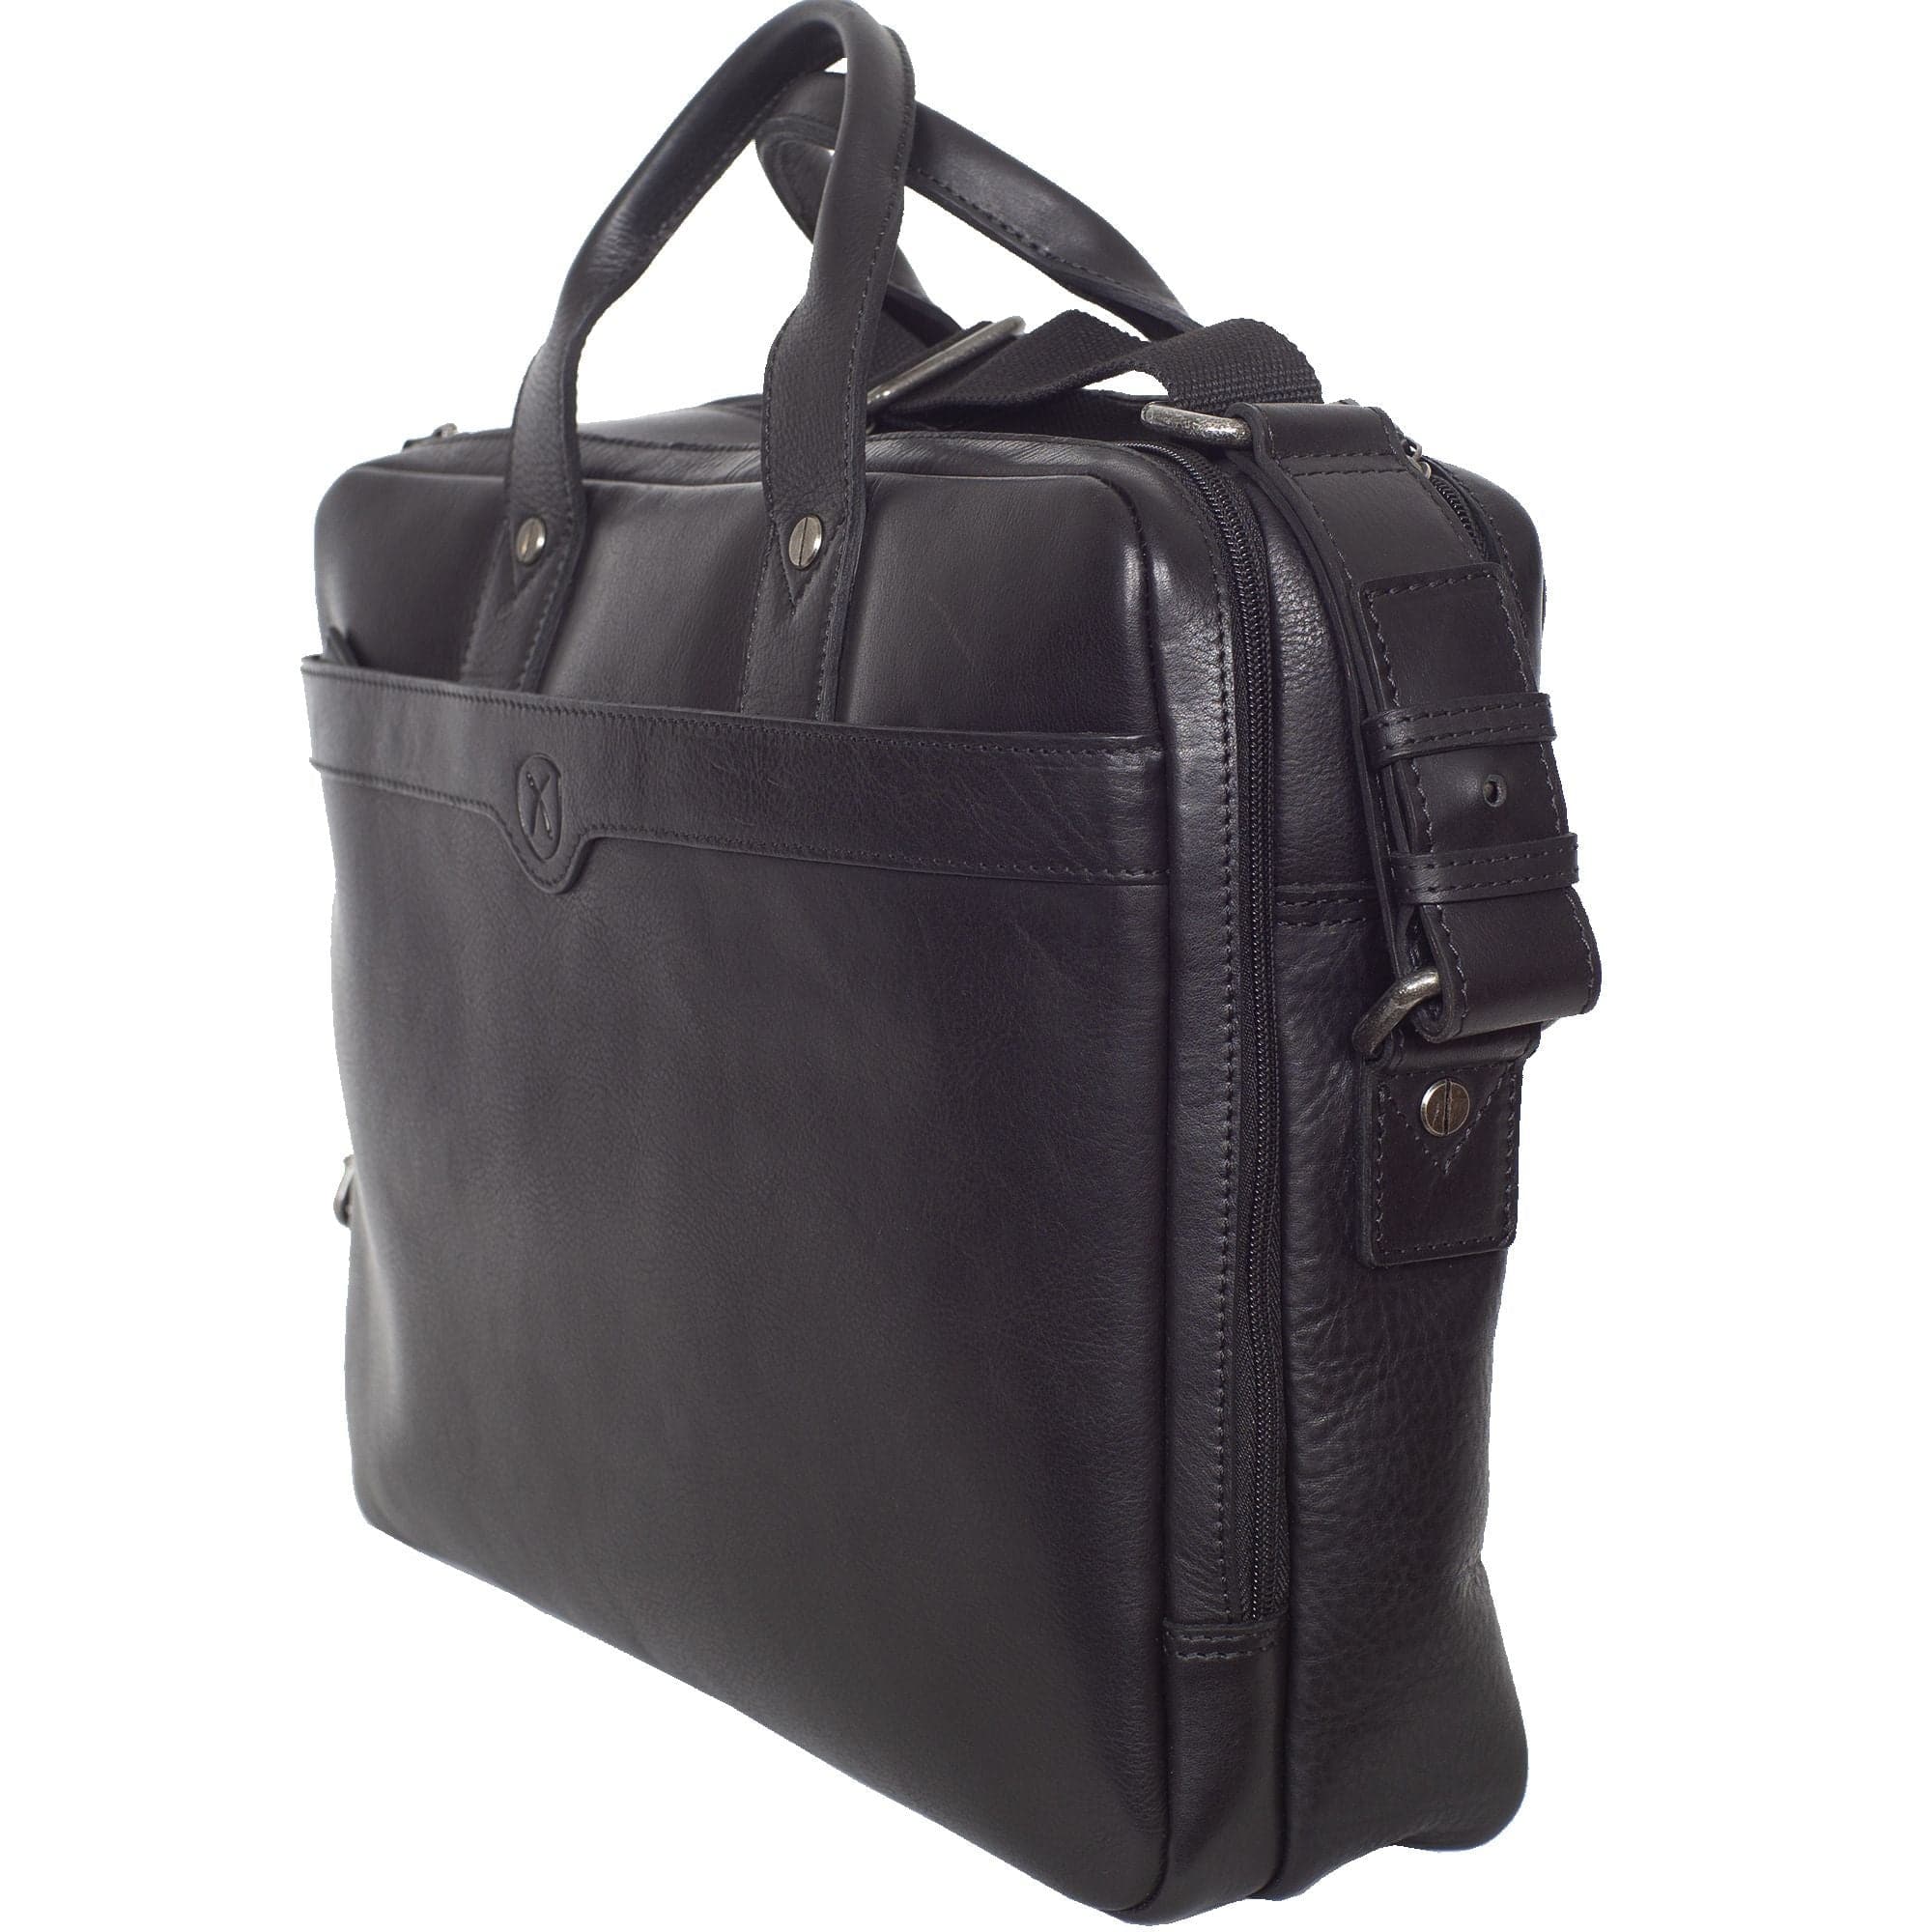 Laptoptasche Businesstasche 17 Zoll Leder schwarz 2 große Fächer